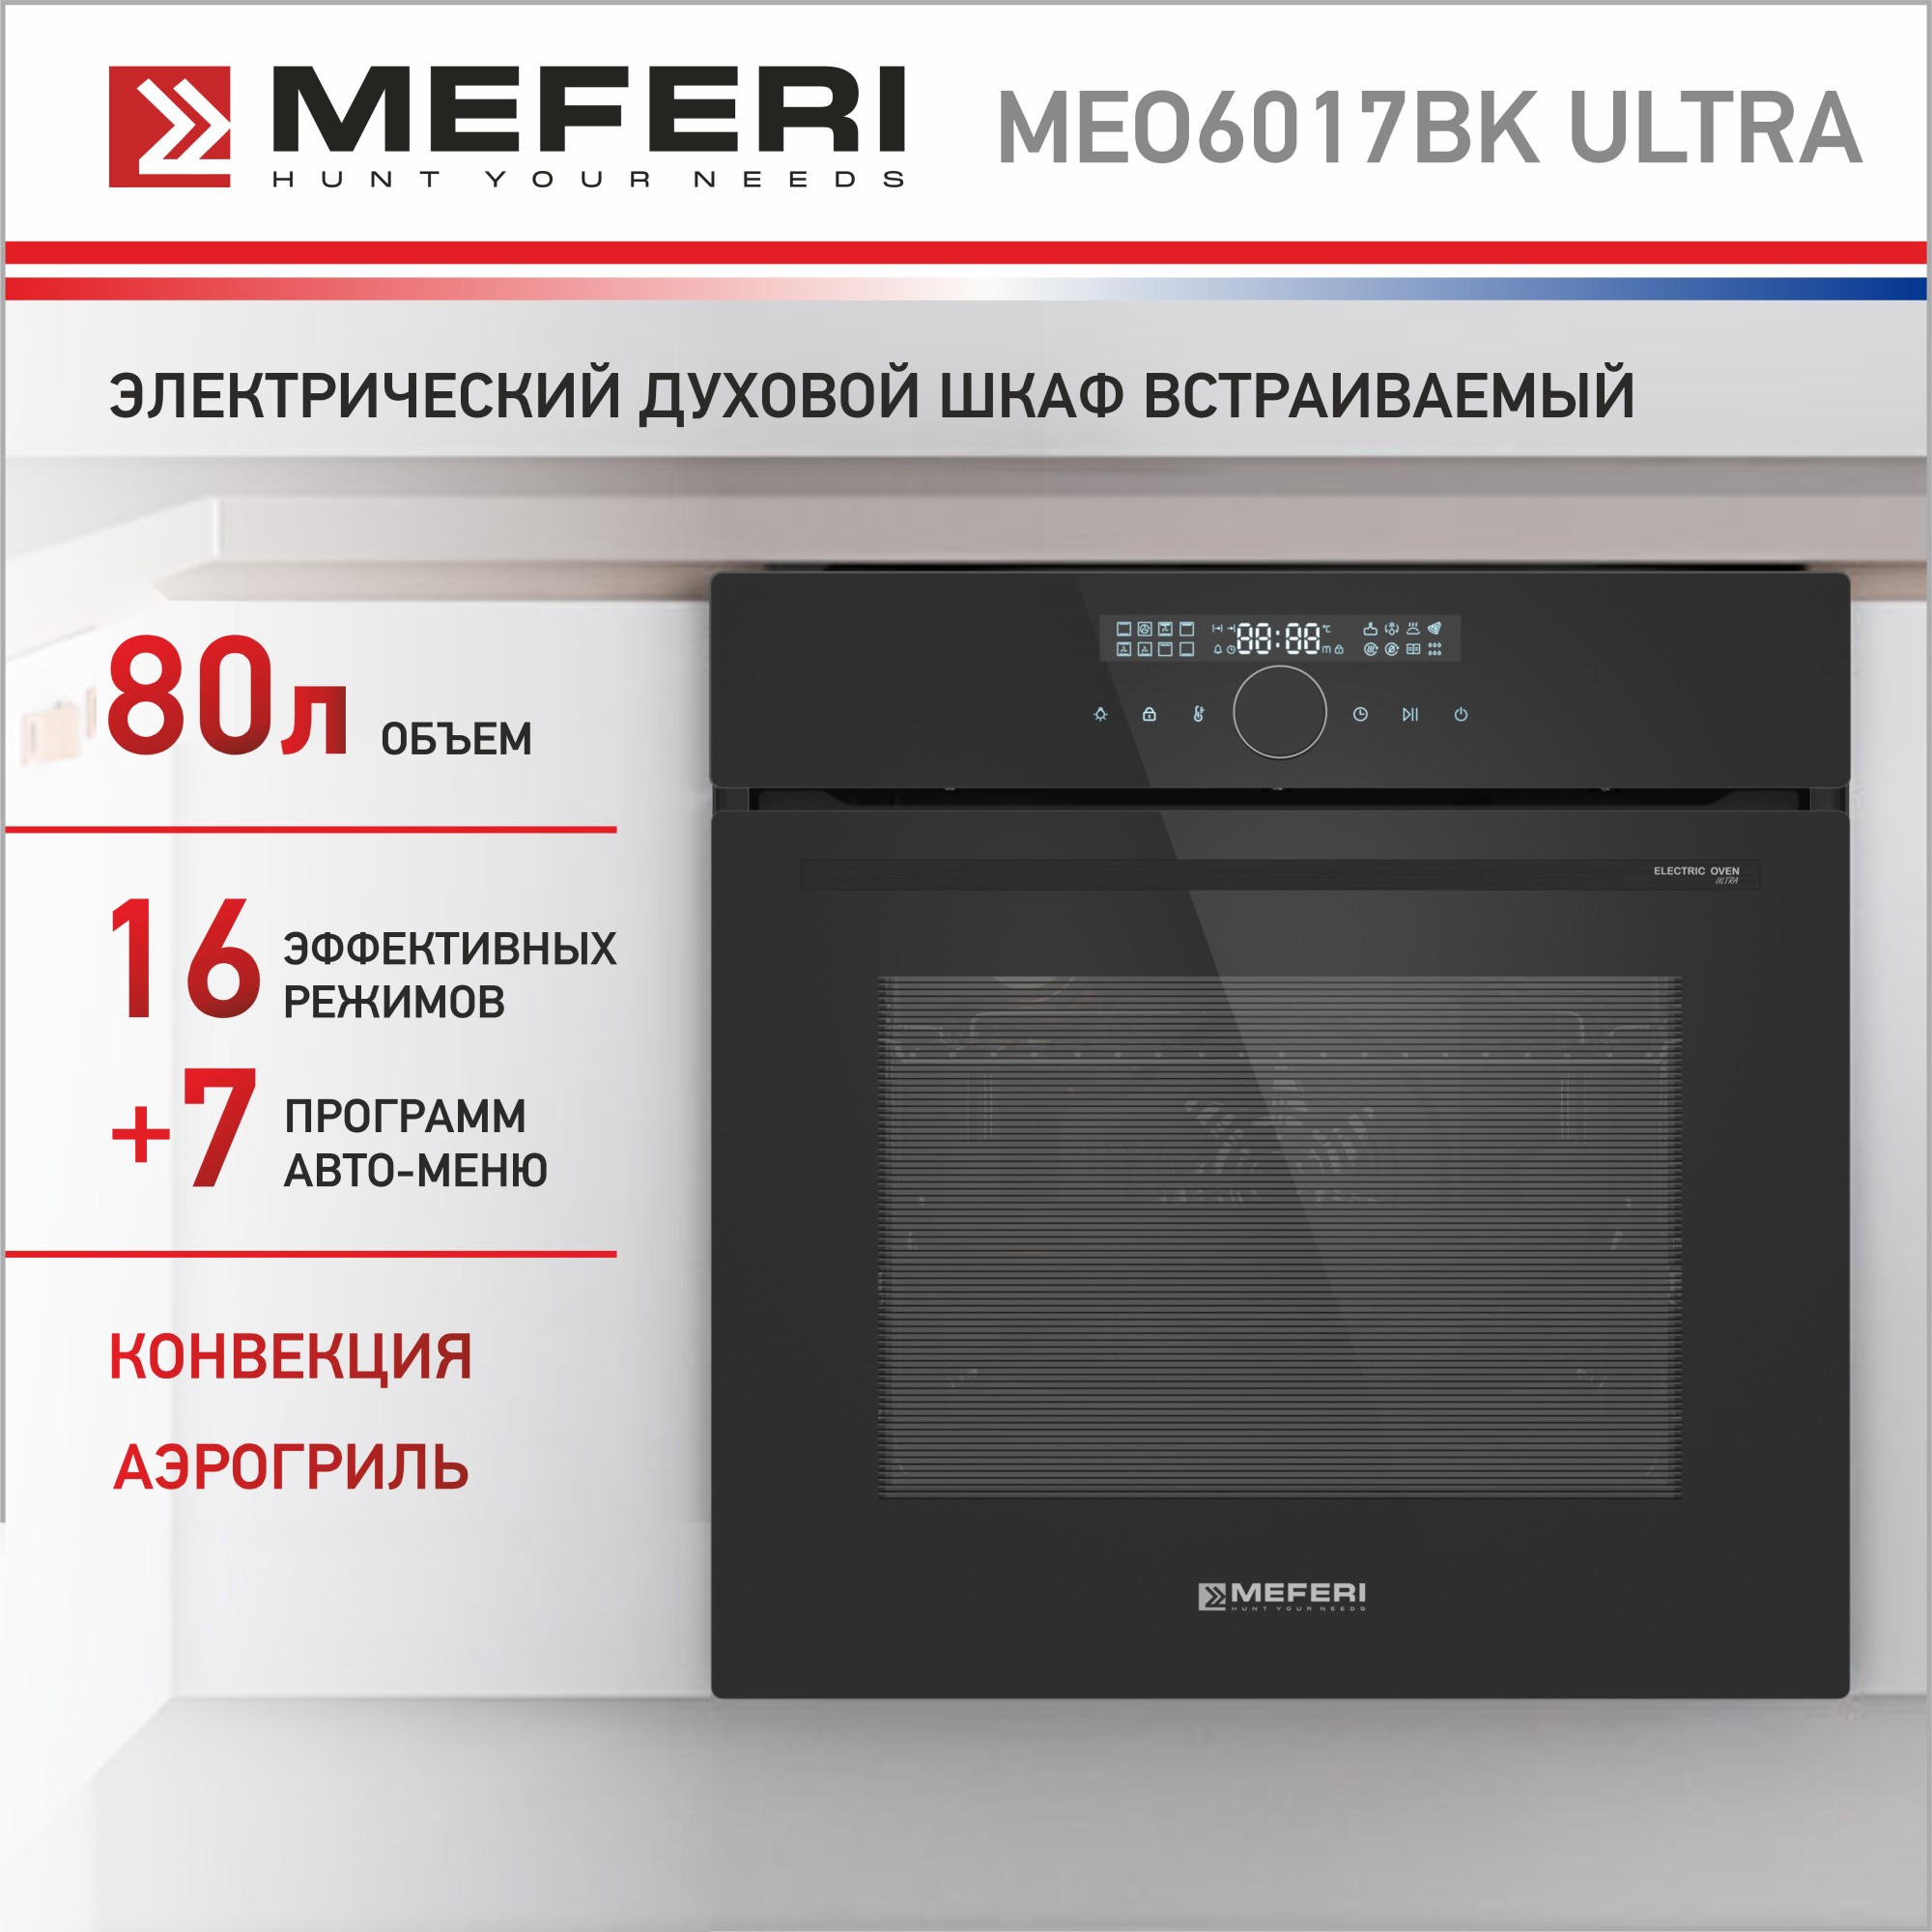 Электрический духовой шкаф MEFERI MEO6017BK ULTRA комплект спутникового телевидения триколор тв европа ultra hd gs b528